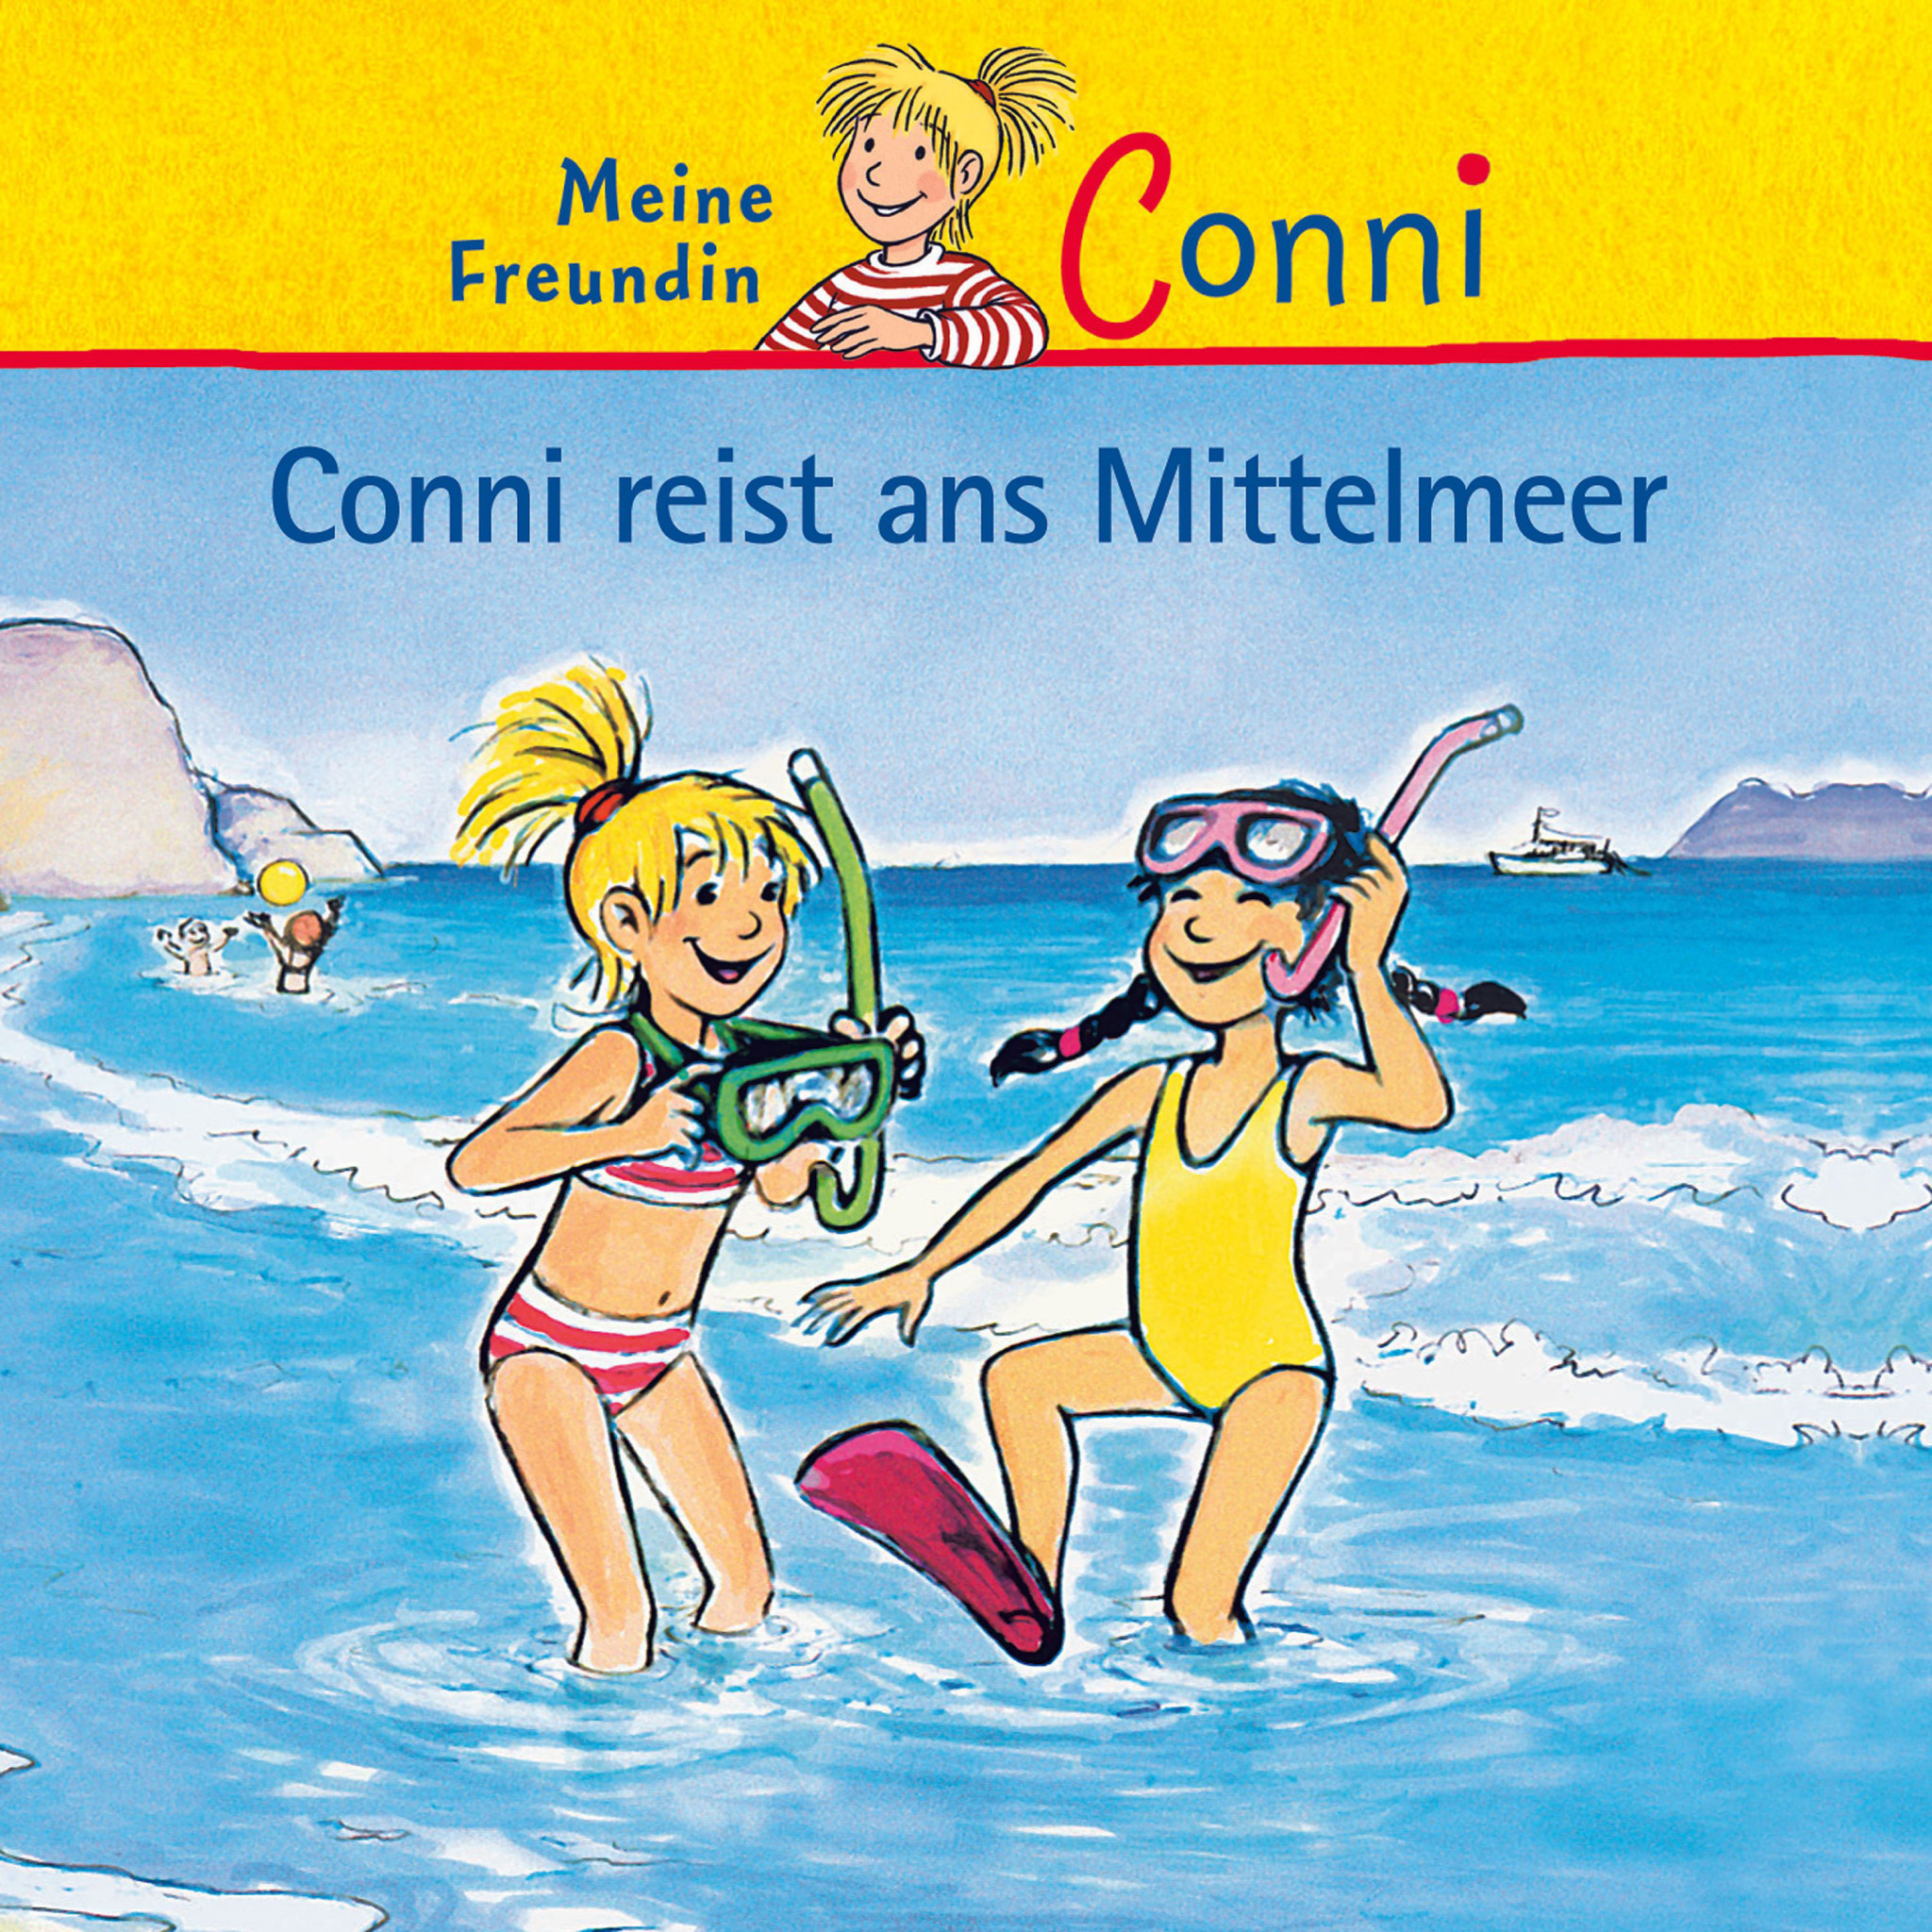 Conni reist ans Mittelmeer